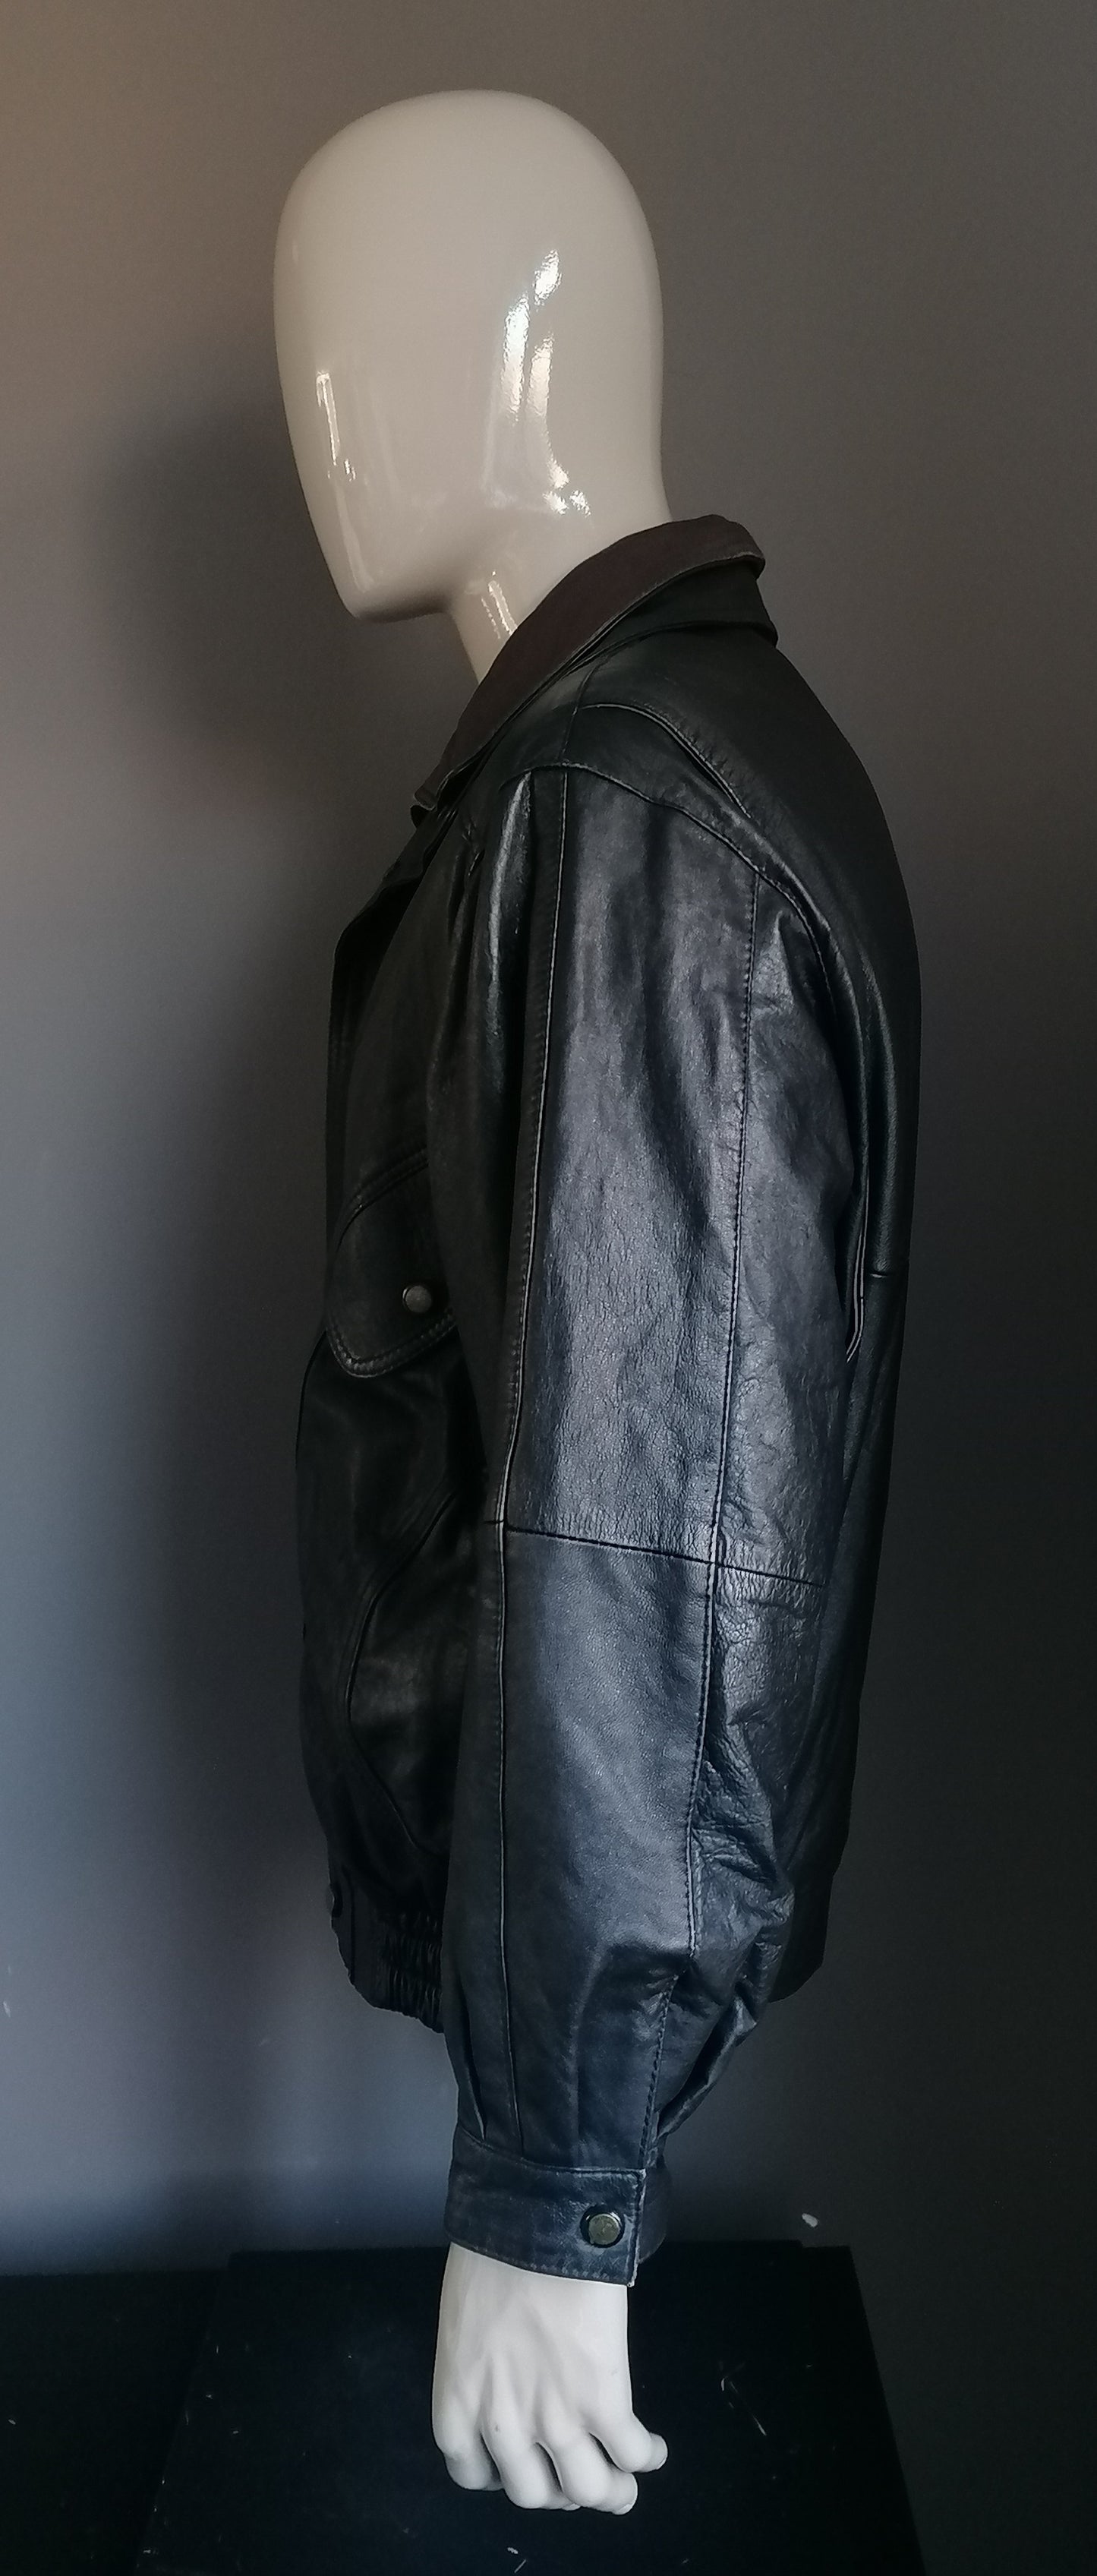 Vintage 80S-90s Lederjacke mit doppelter Verschluss. Braun schwarz gefärbt. Größe L / XL.